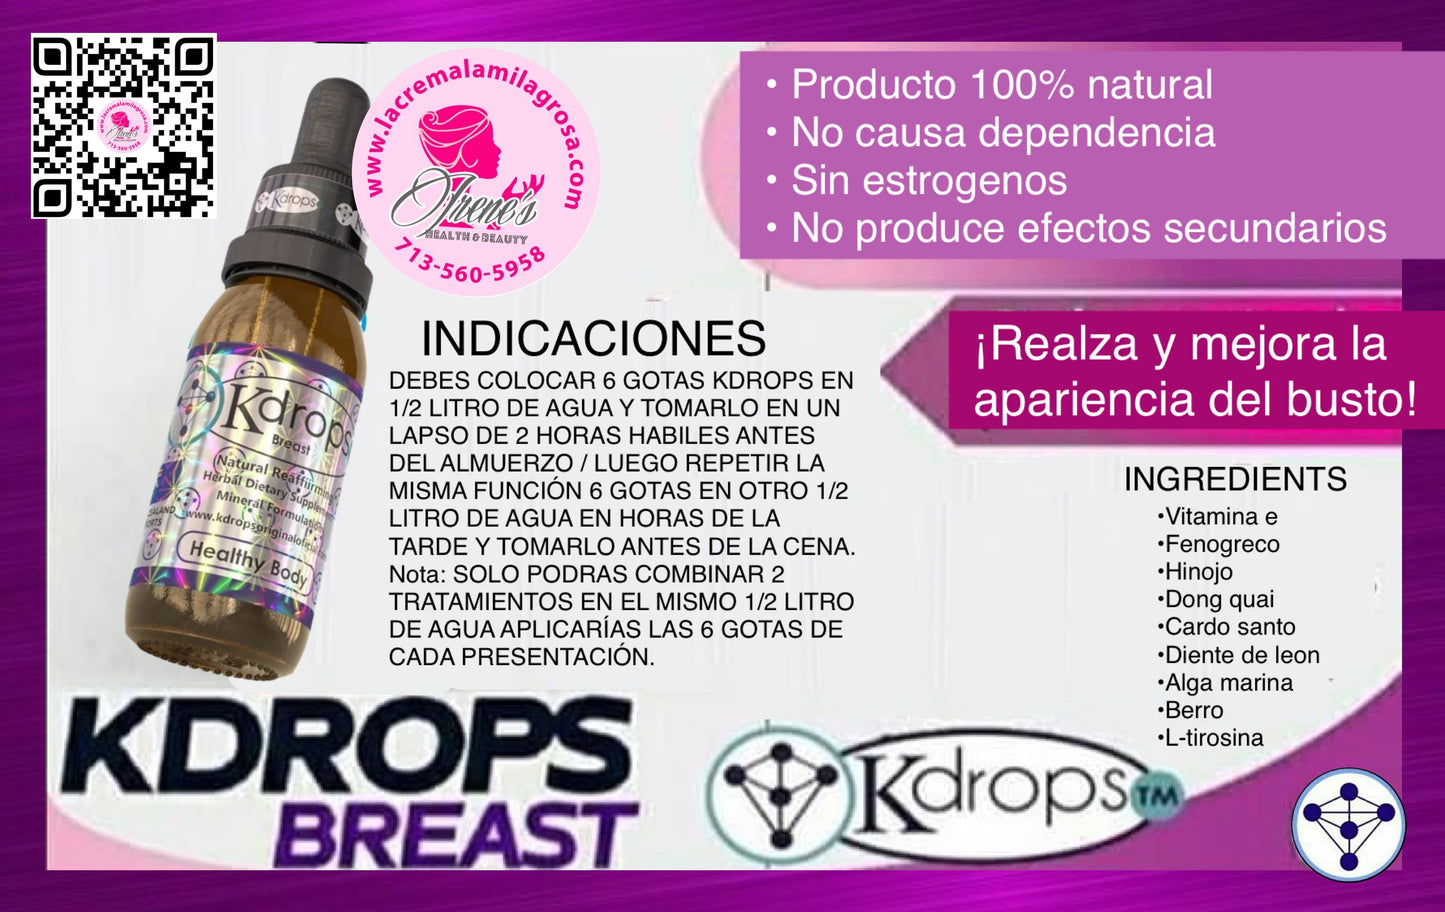 Kdrops Breast (Senos)